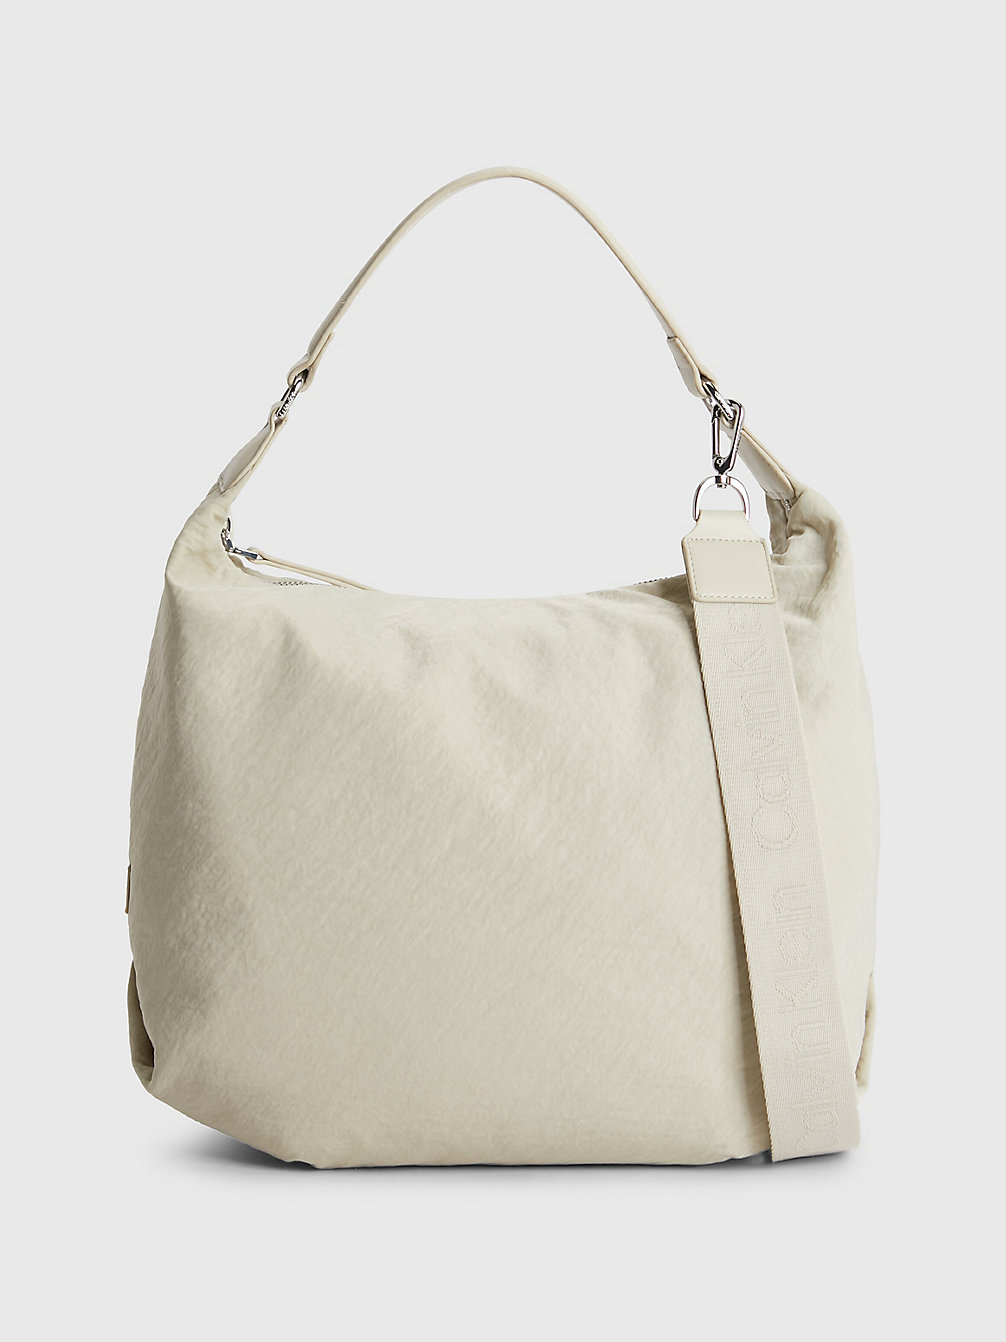 STONEY BEIGE Recycled Nylon Hobo Bag undefined women Calvin Klein